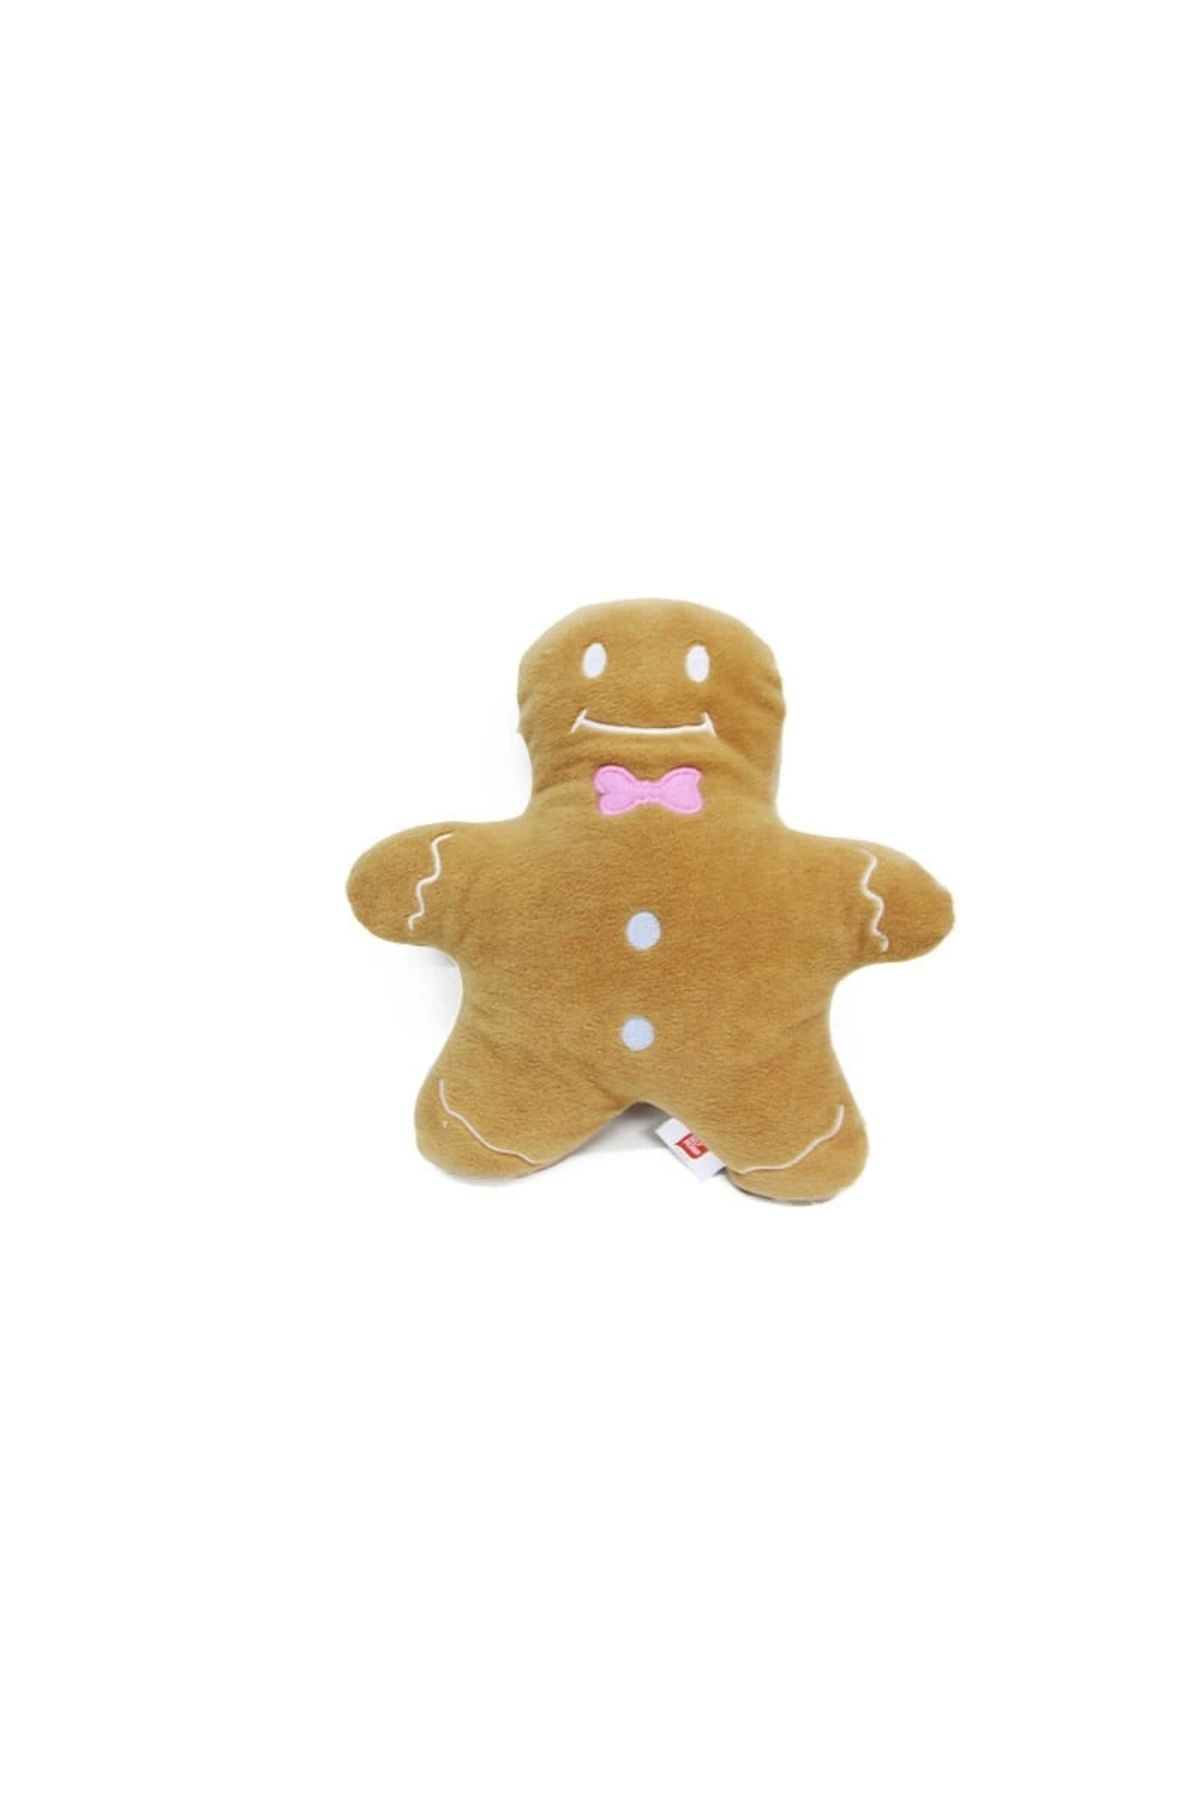 Modaliz Kurabiye Adam (gingerbread) Peluş